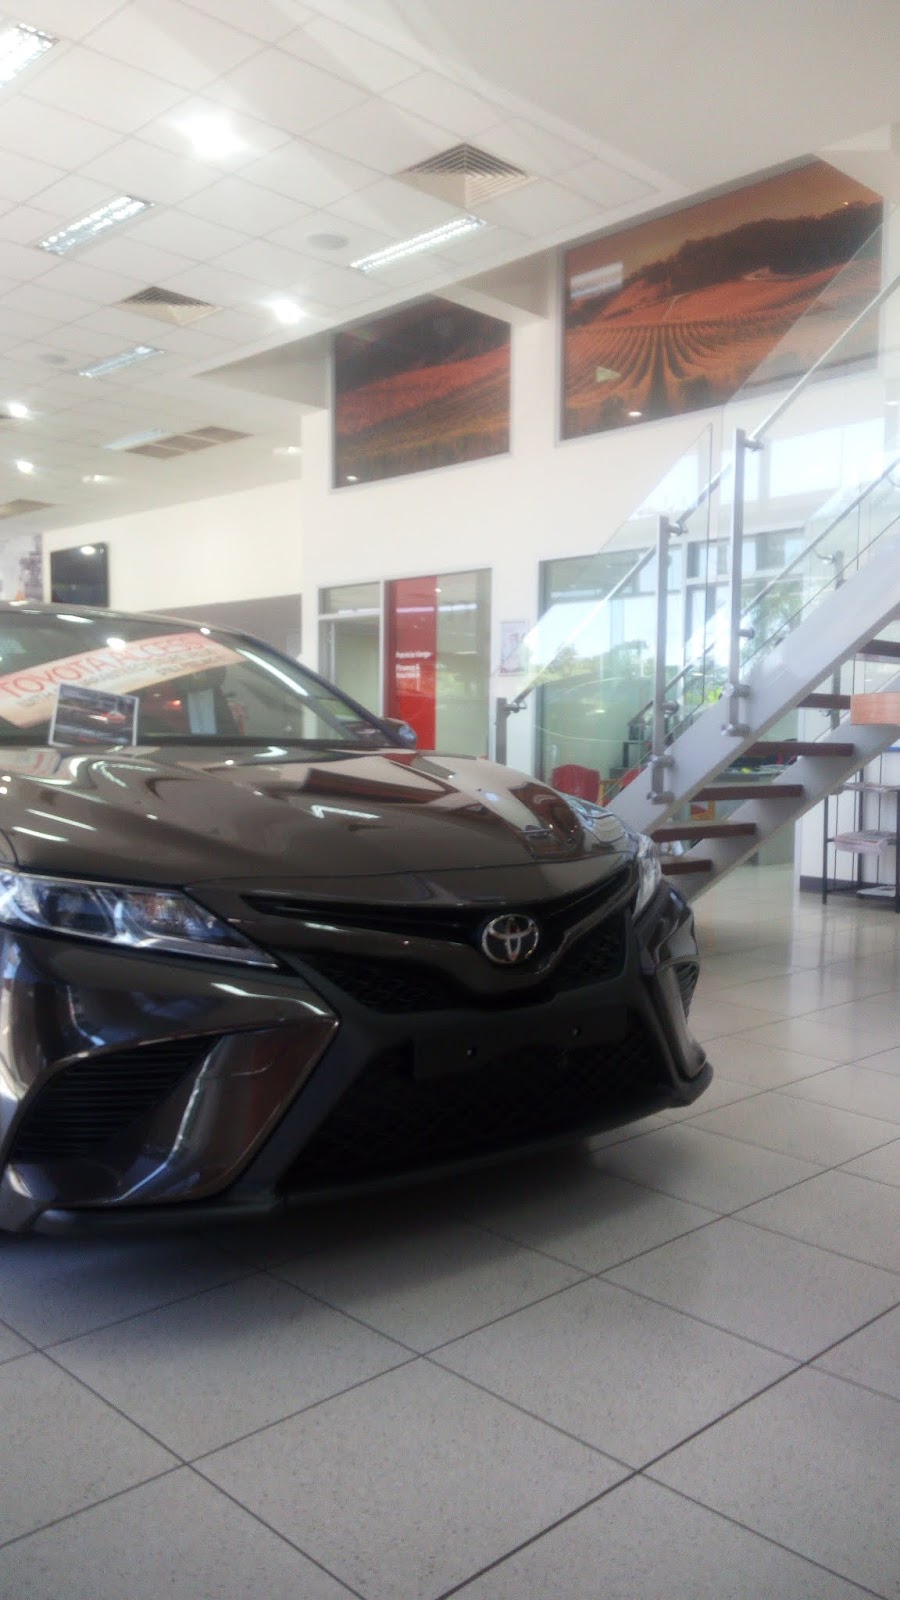 Adelaide Hills Toyota | car dealer | 57 Adelaide Rd, Mount Barker SA 5251, Australia | 0883982226 OR +61 8 8398 2226